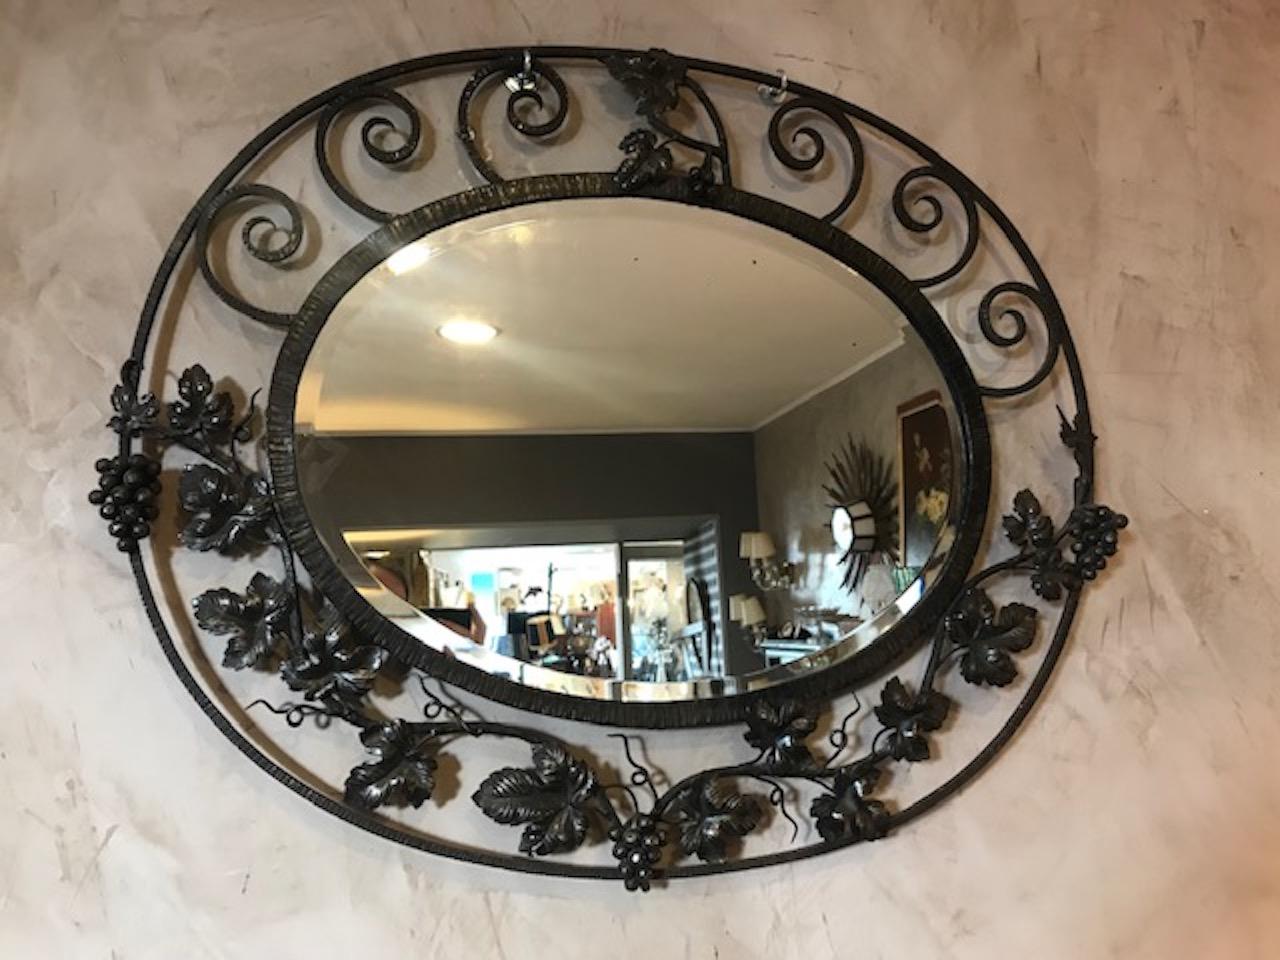 Schöner und seltener französischer Art-Déco-Schmiedeeisenspiegel aus den 1930er Jahren.
Sehr schöne Arbeit mit geschnitzten Weintrauben. Kann sowohl horizontal als auch vertikal installiert werden.
Gute Qualität und guter Zustand.